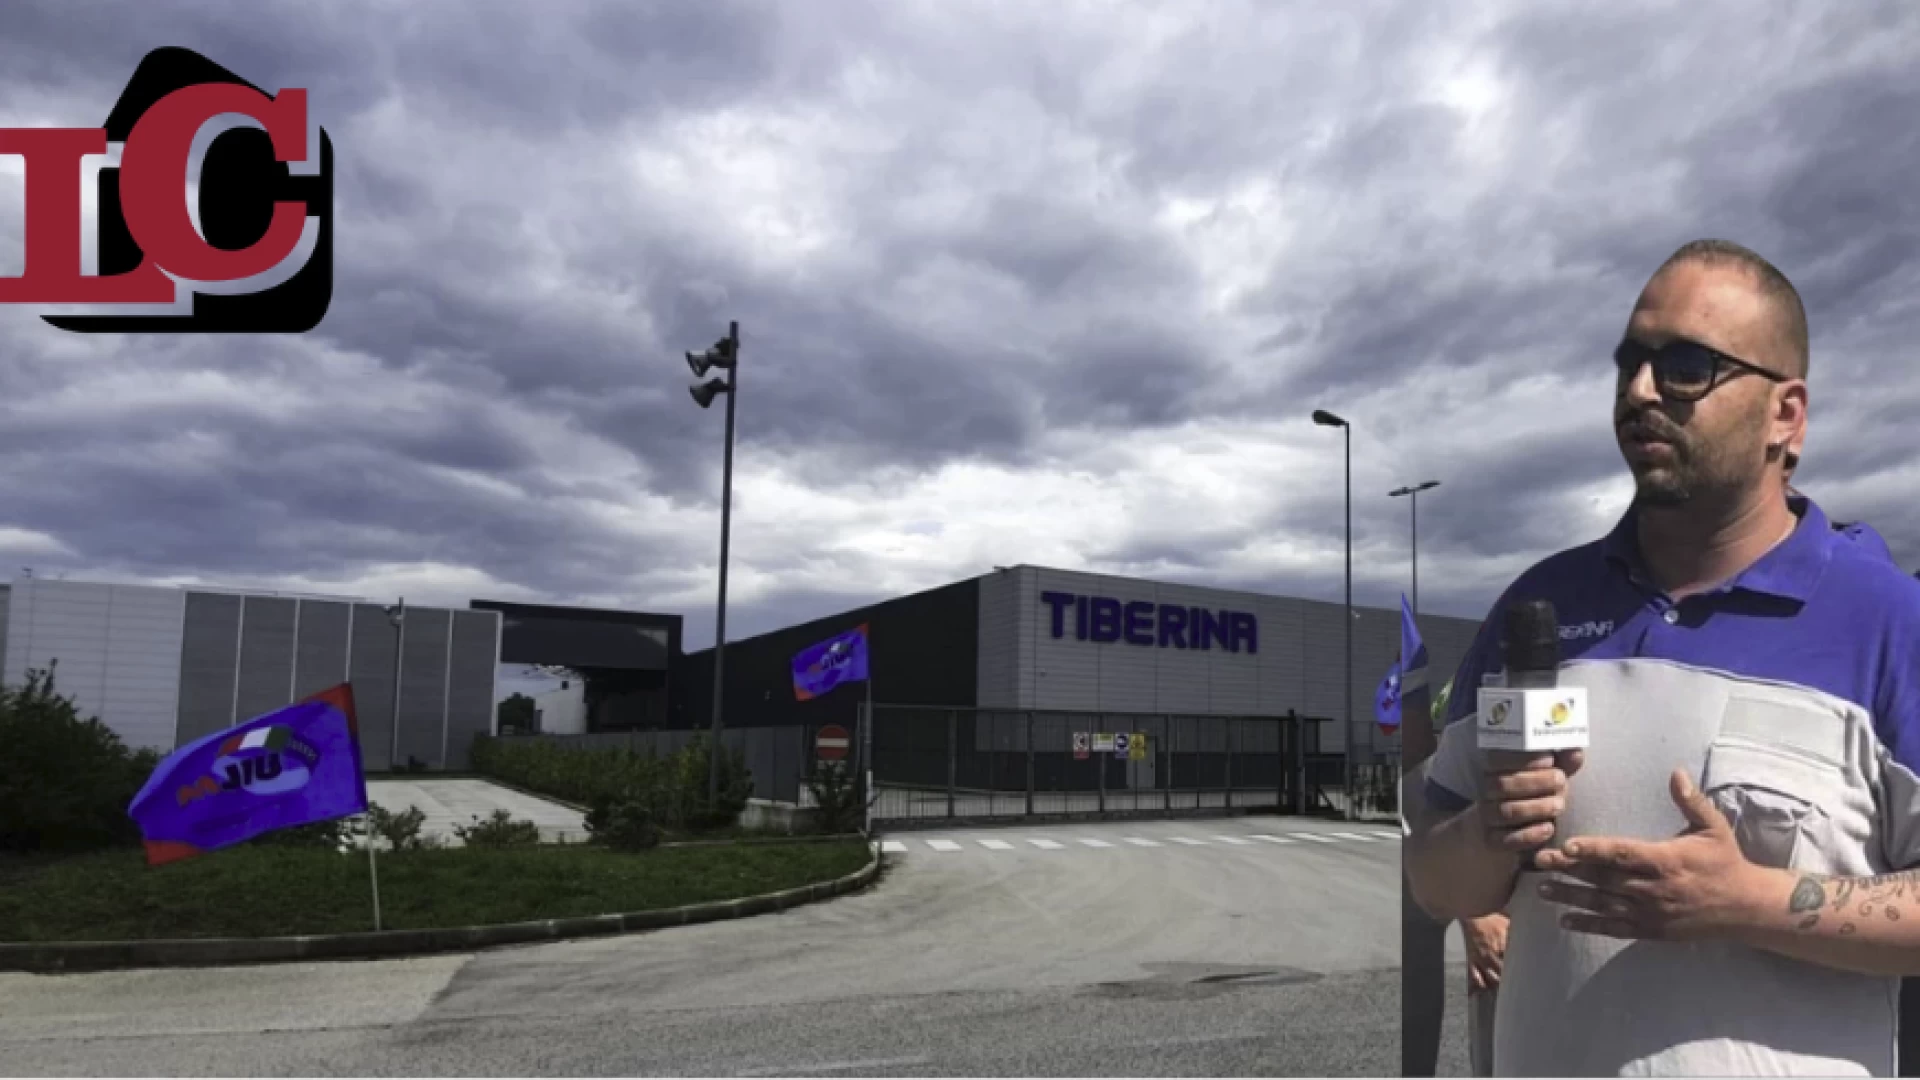 Tiberina, previsto un investimento di 30 milioni di euro